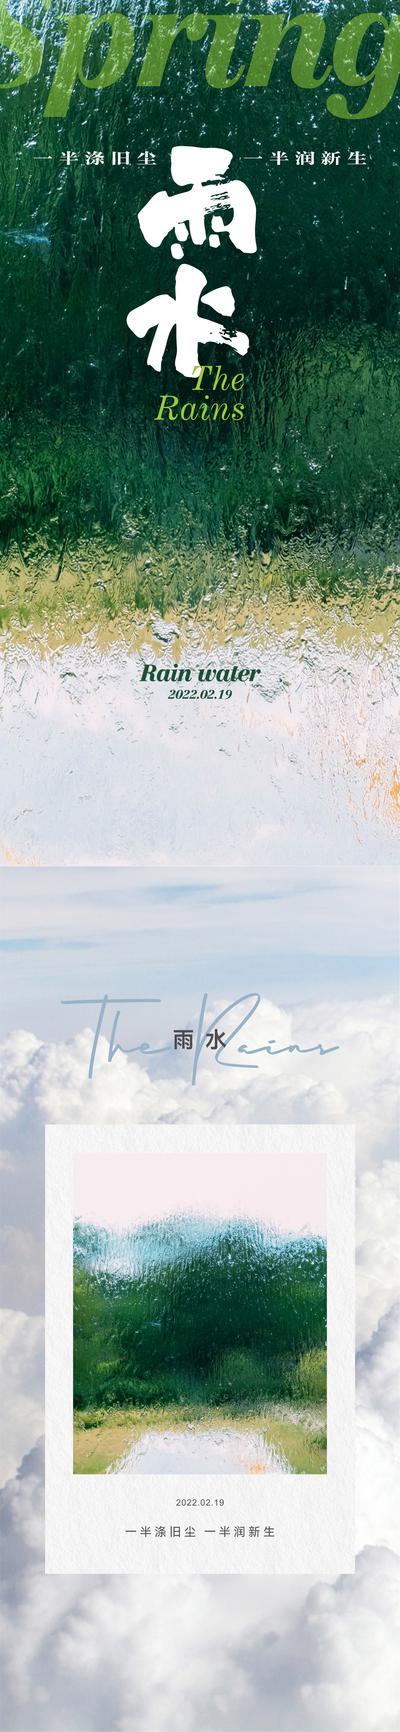 南门网 广告 海报 节气 雨水 系列 简约 品质